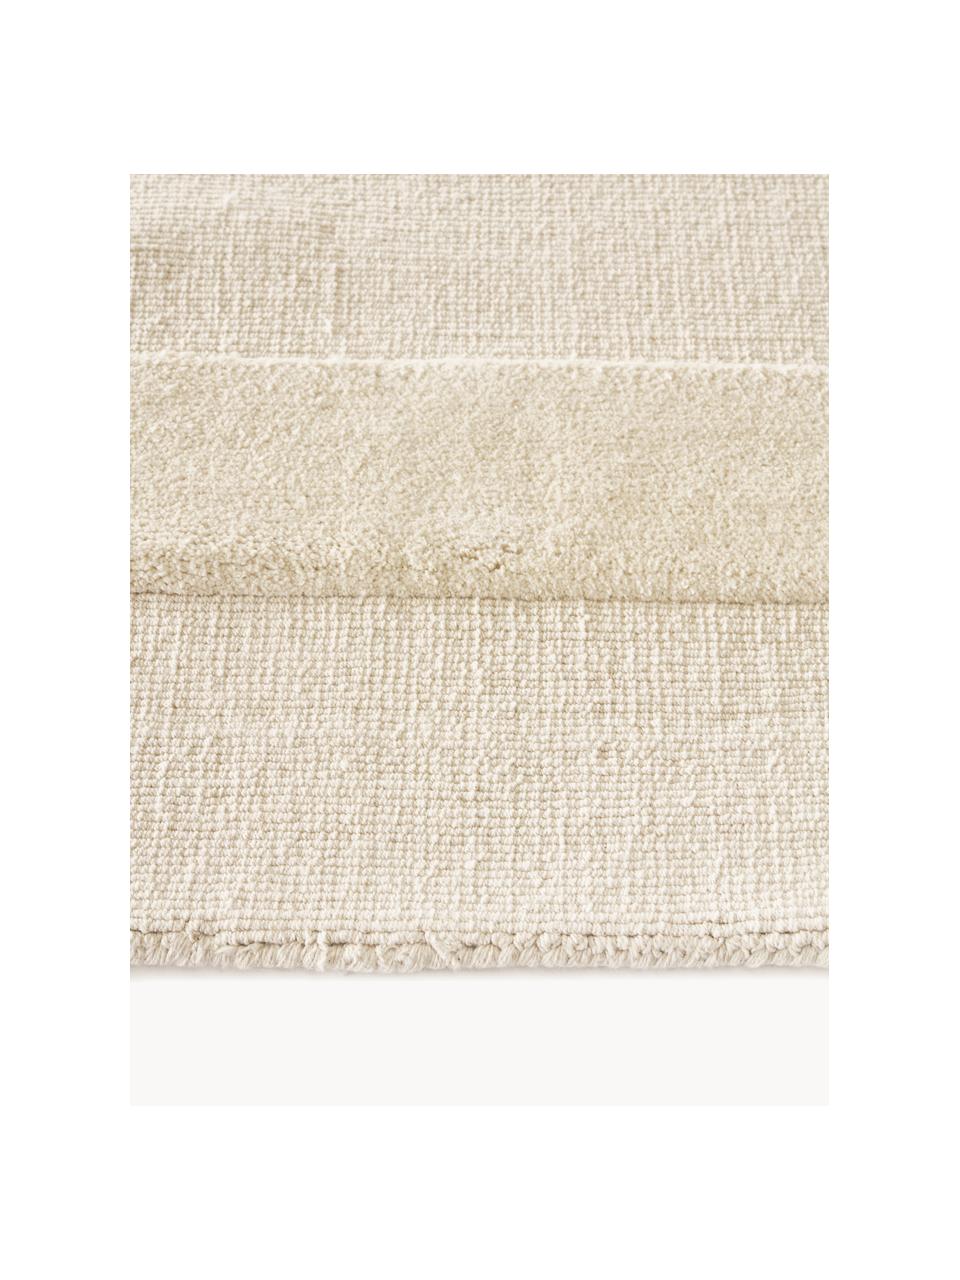 Tappeto in cotone tessuto a mano con motivo in rilievo Dania, 100% cotone, Bianco crema, Larg. 200 x Lung. 300 cm (taglia L)